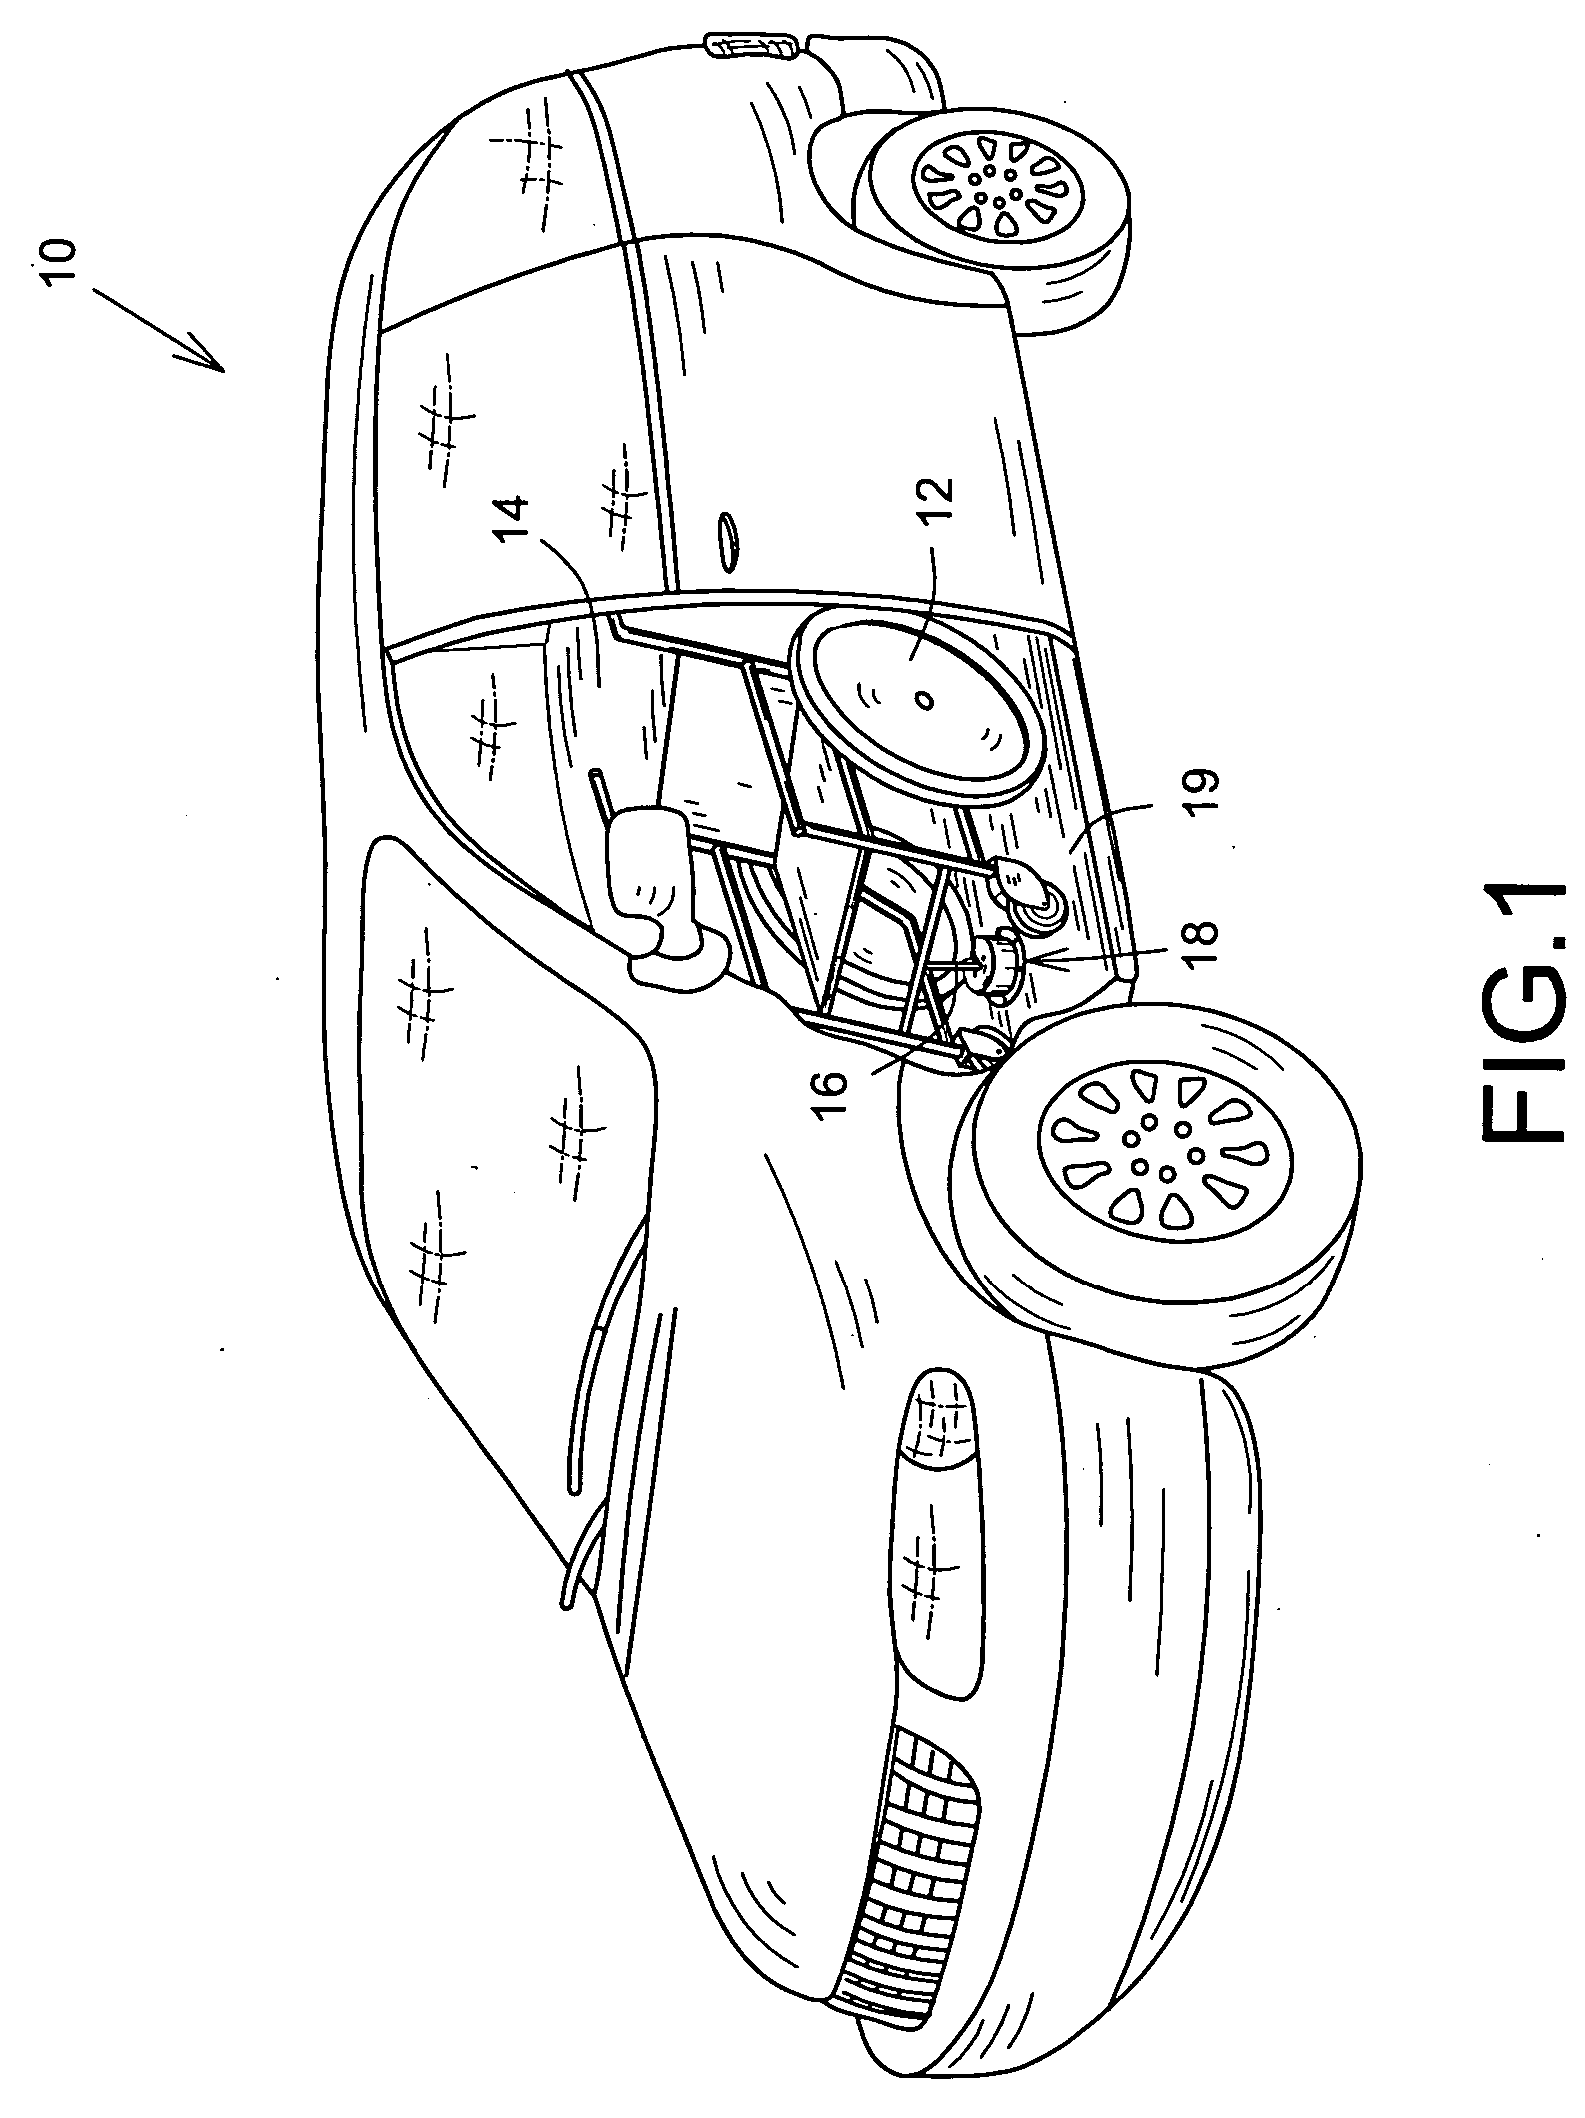 Wheelchair locking device